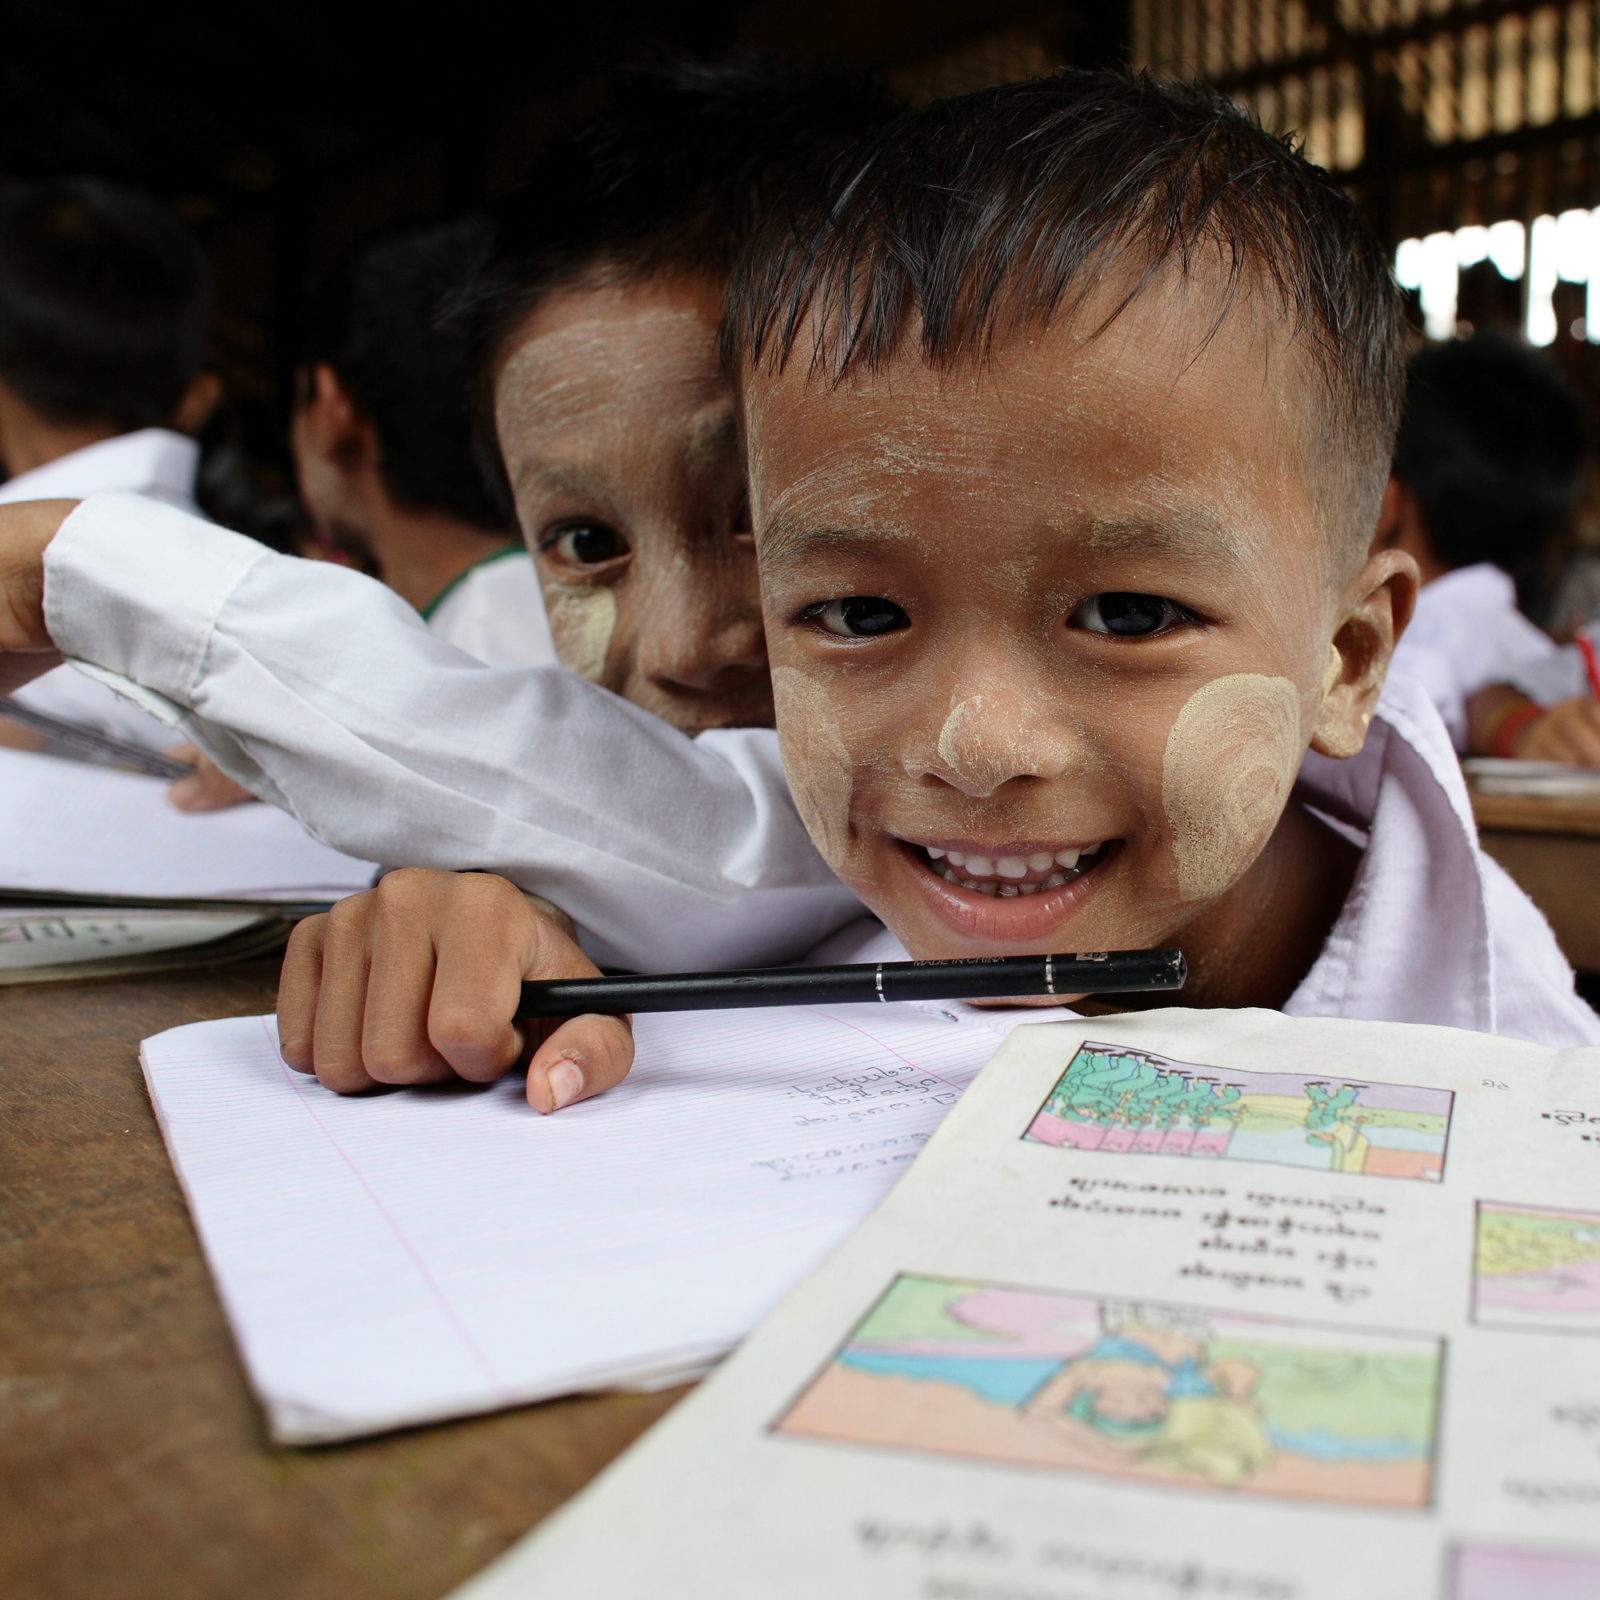 Närbild av leende pojke med, i Myanmar, traditionell vitmålning i ansiktet, sitter i klassrum med penna i handen.